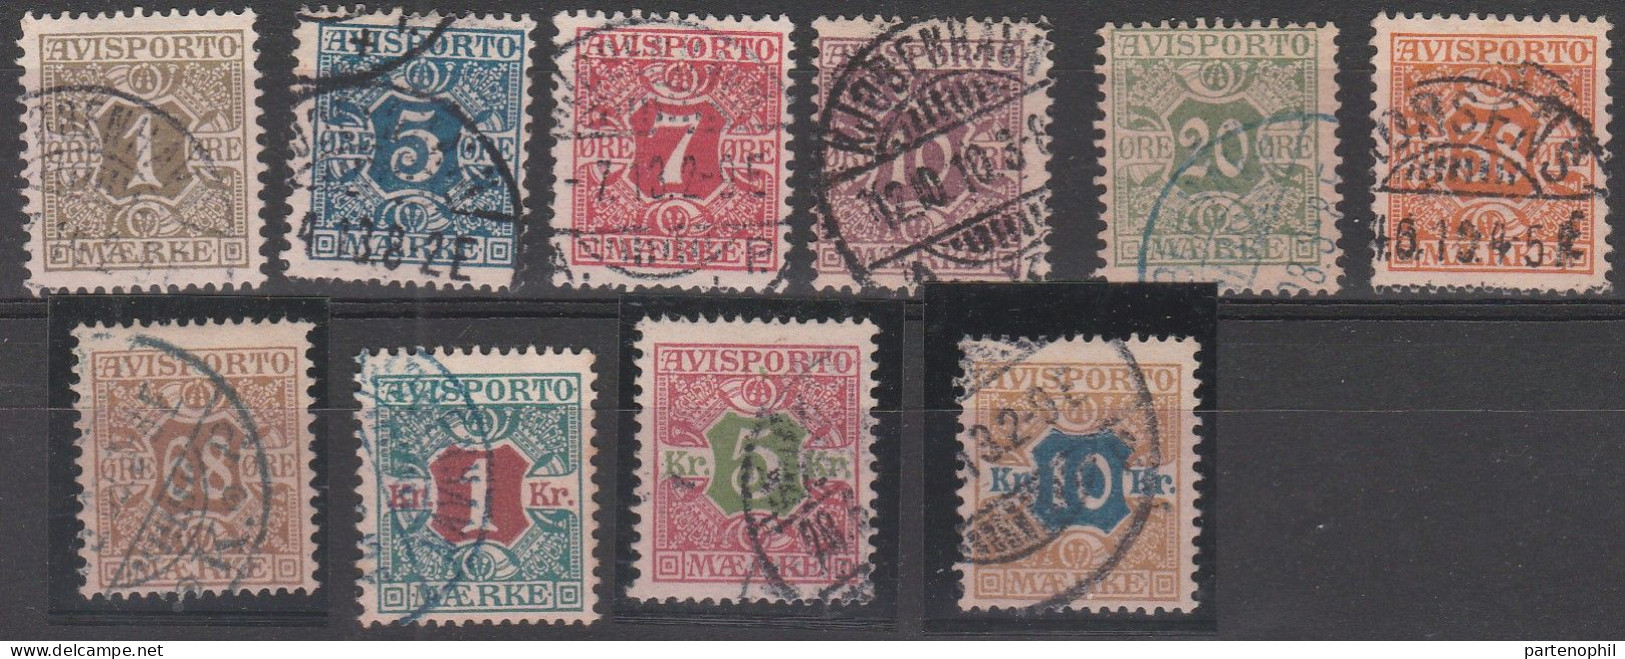 458 - Denmark Danimarca 1907 - Giornali - Cifra Al Centro N. 1/10. Cat. € 180,00. SPL - Usati